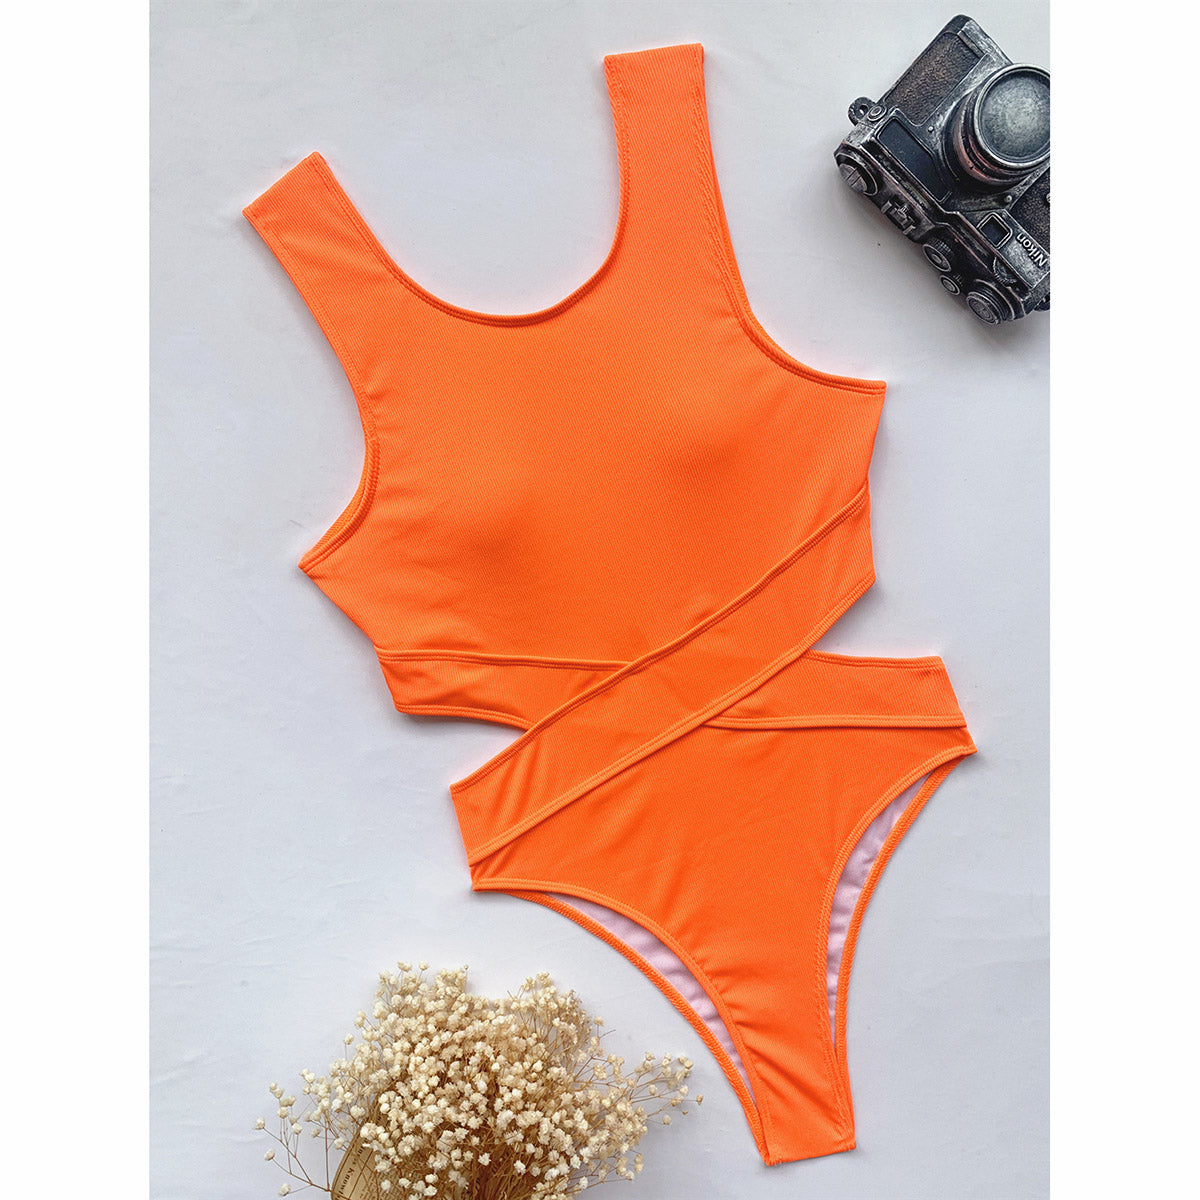 One Piece Swimsuit Solid Swimwear Thong Bandage Bathing Suit Monokini Bathing Suit Beachwear The Clothing Company Sydney